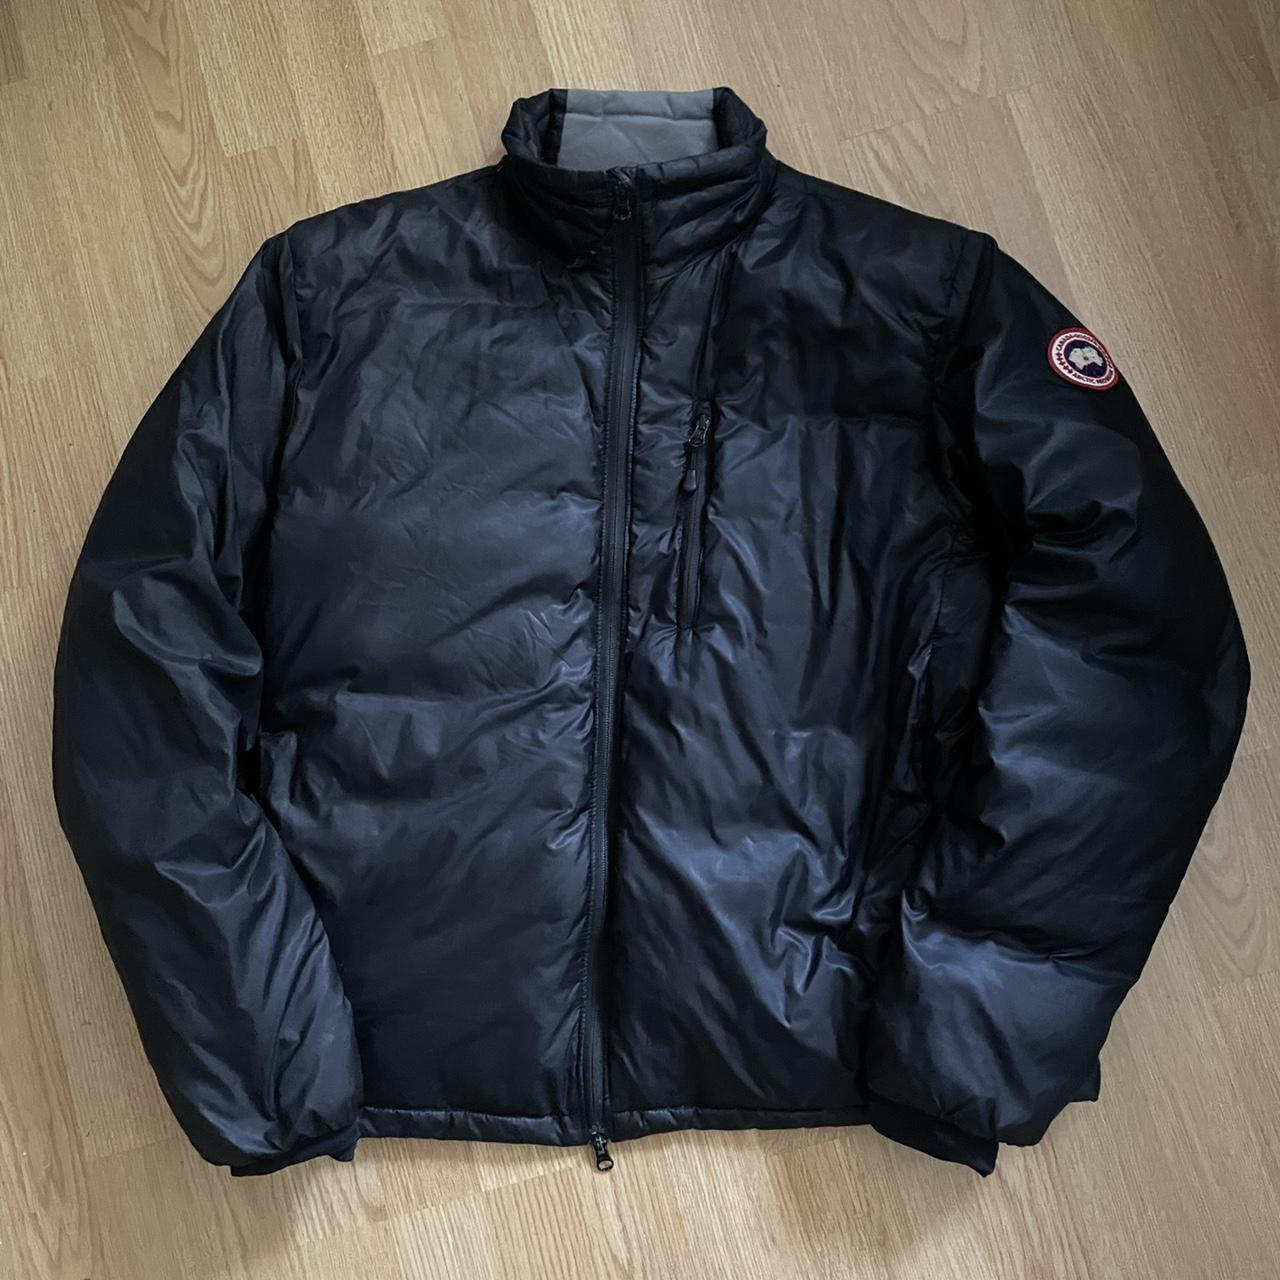 Product Image 1 - Canada Goose Lodge Jacket 

Size